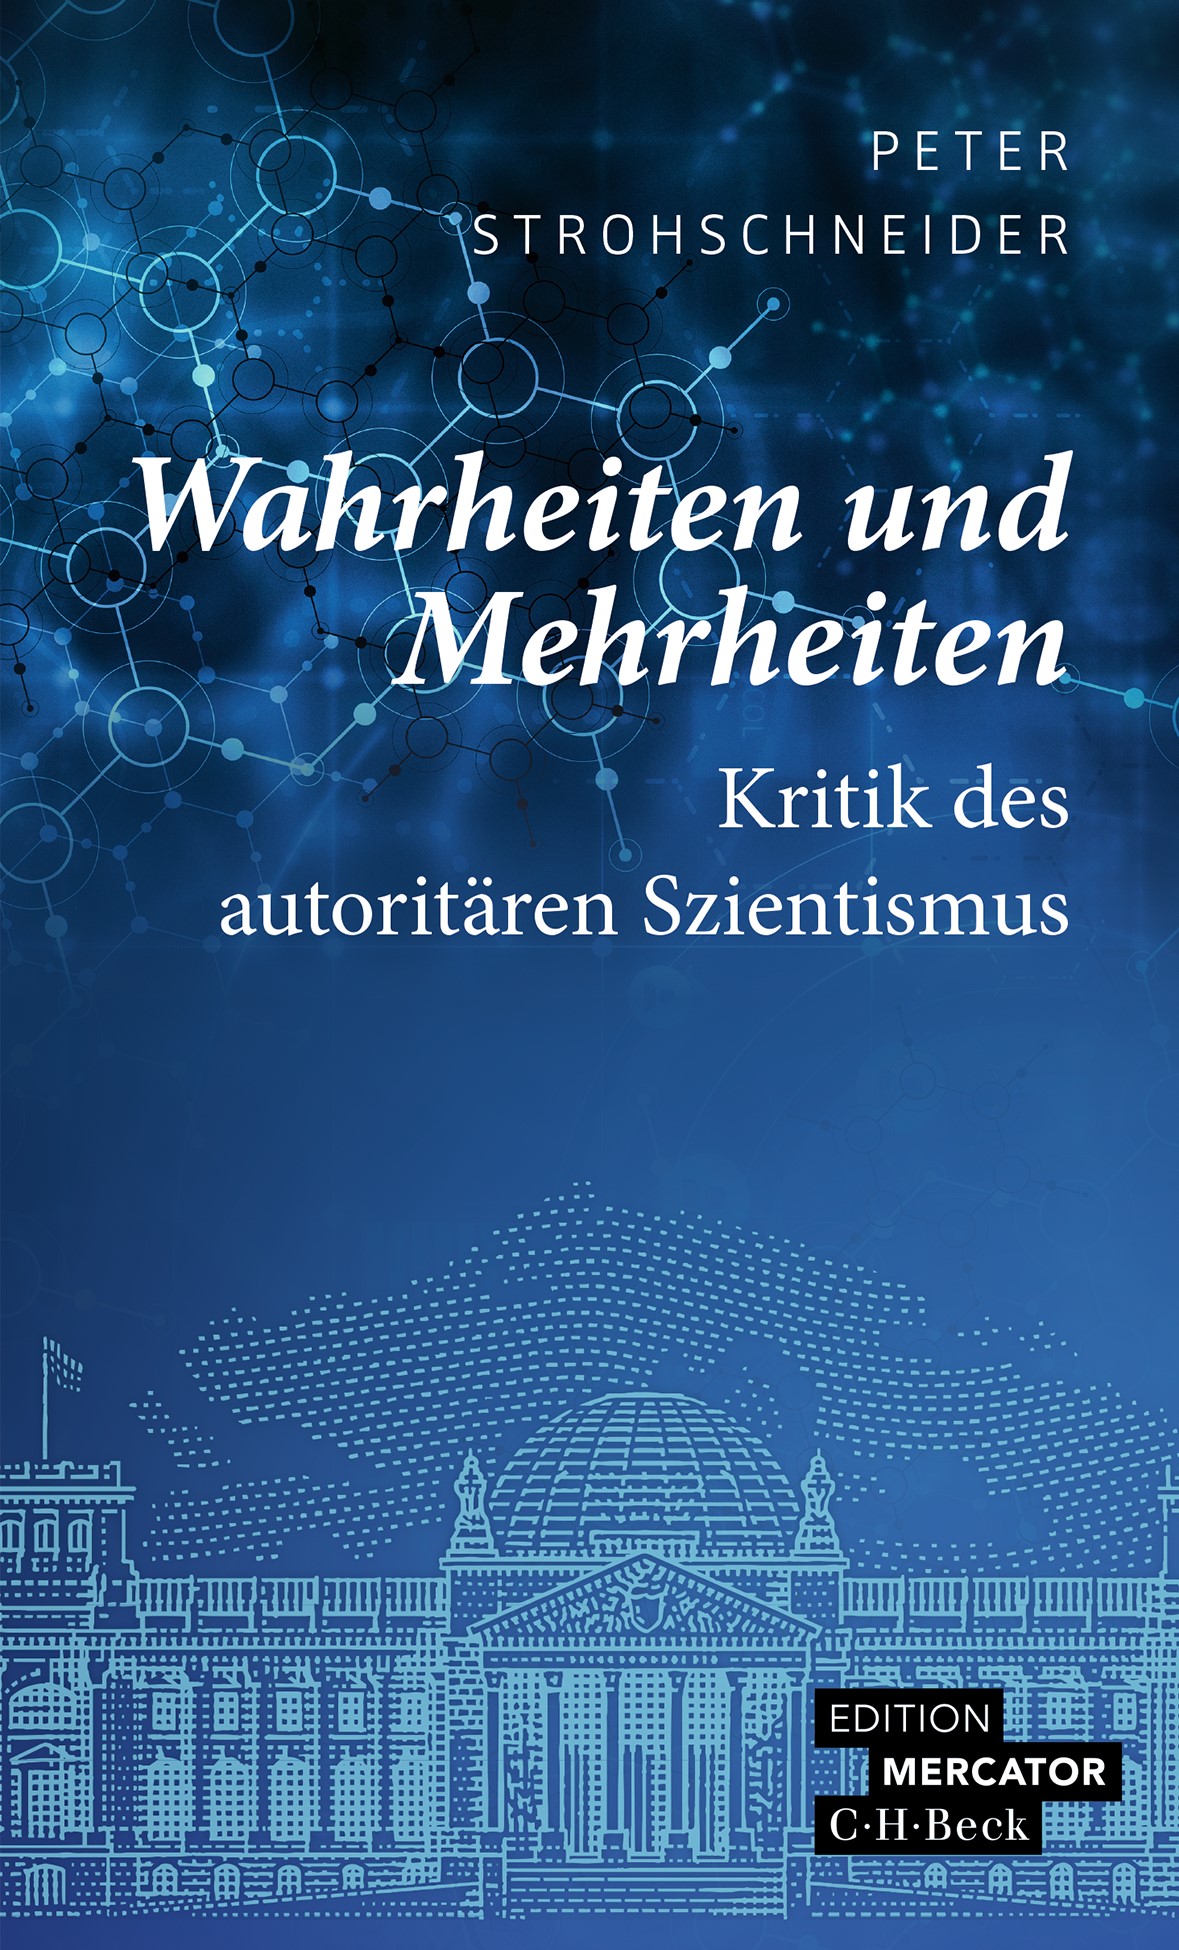 Cover: Strohschneider, Peter, Wahrheiten und Mehrheiten